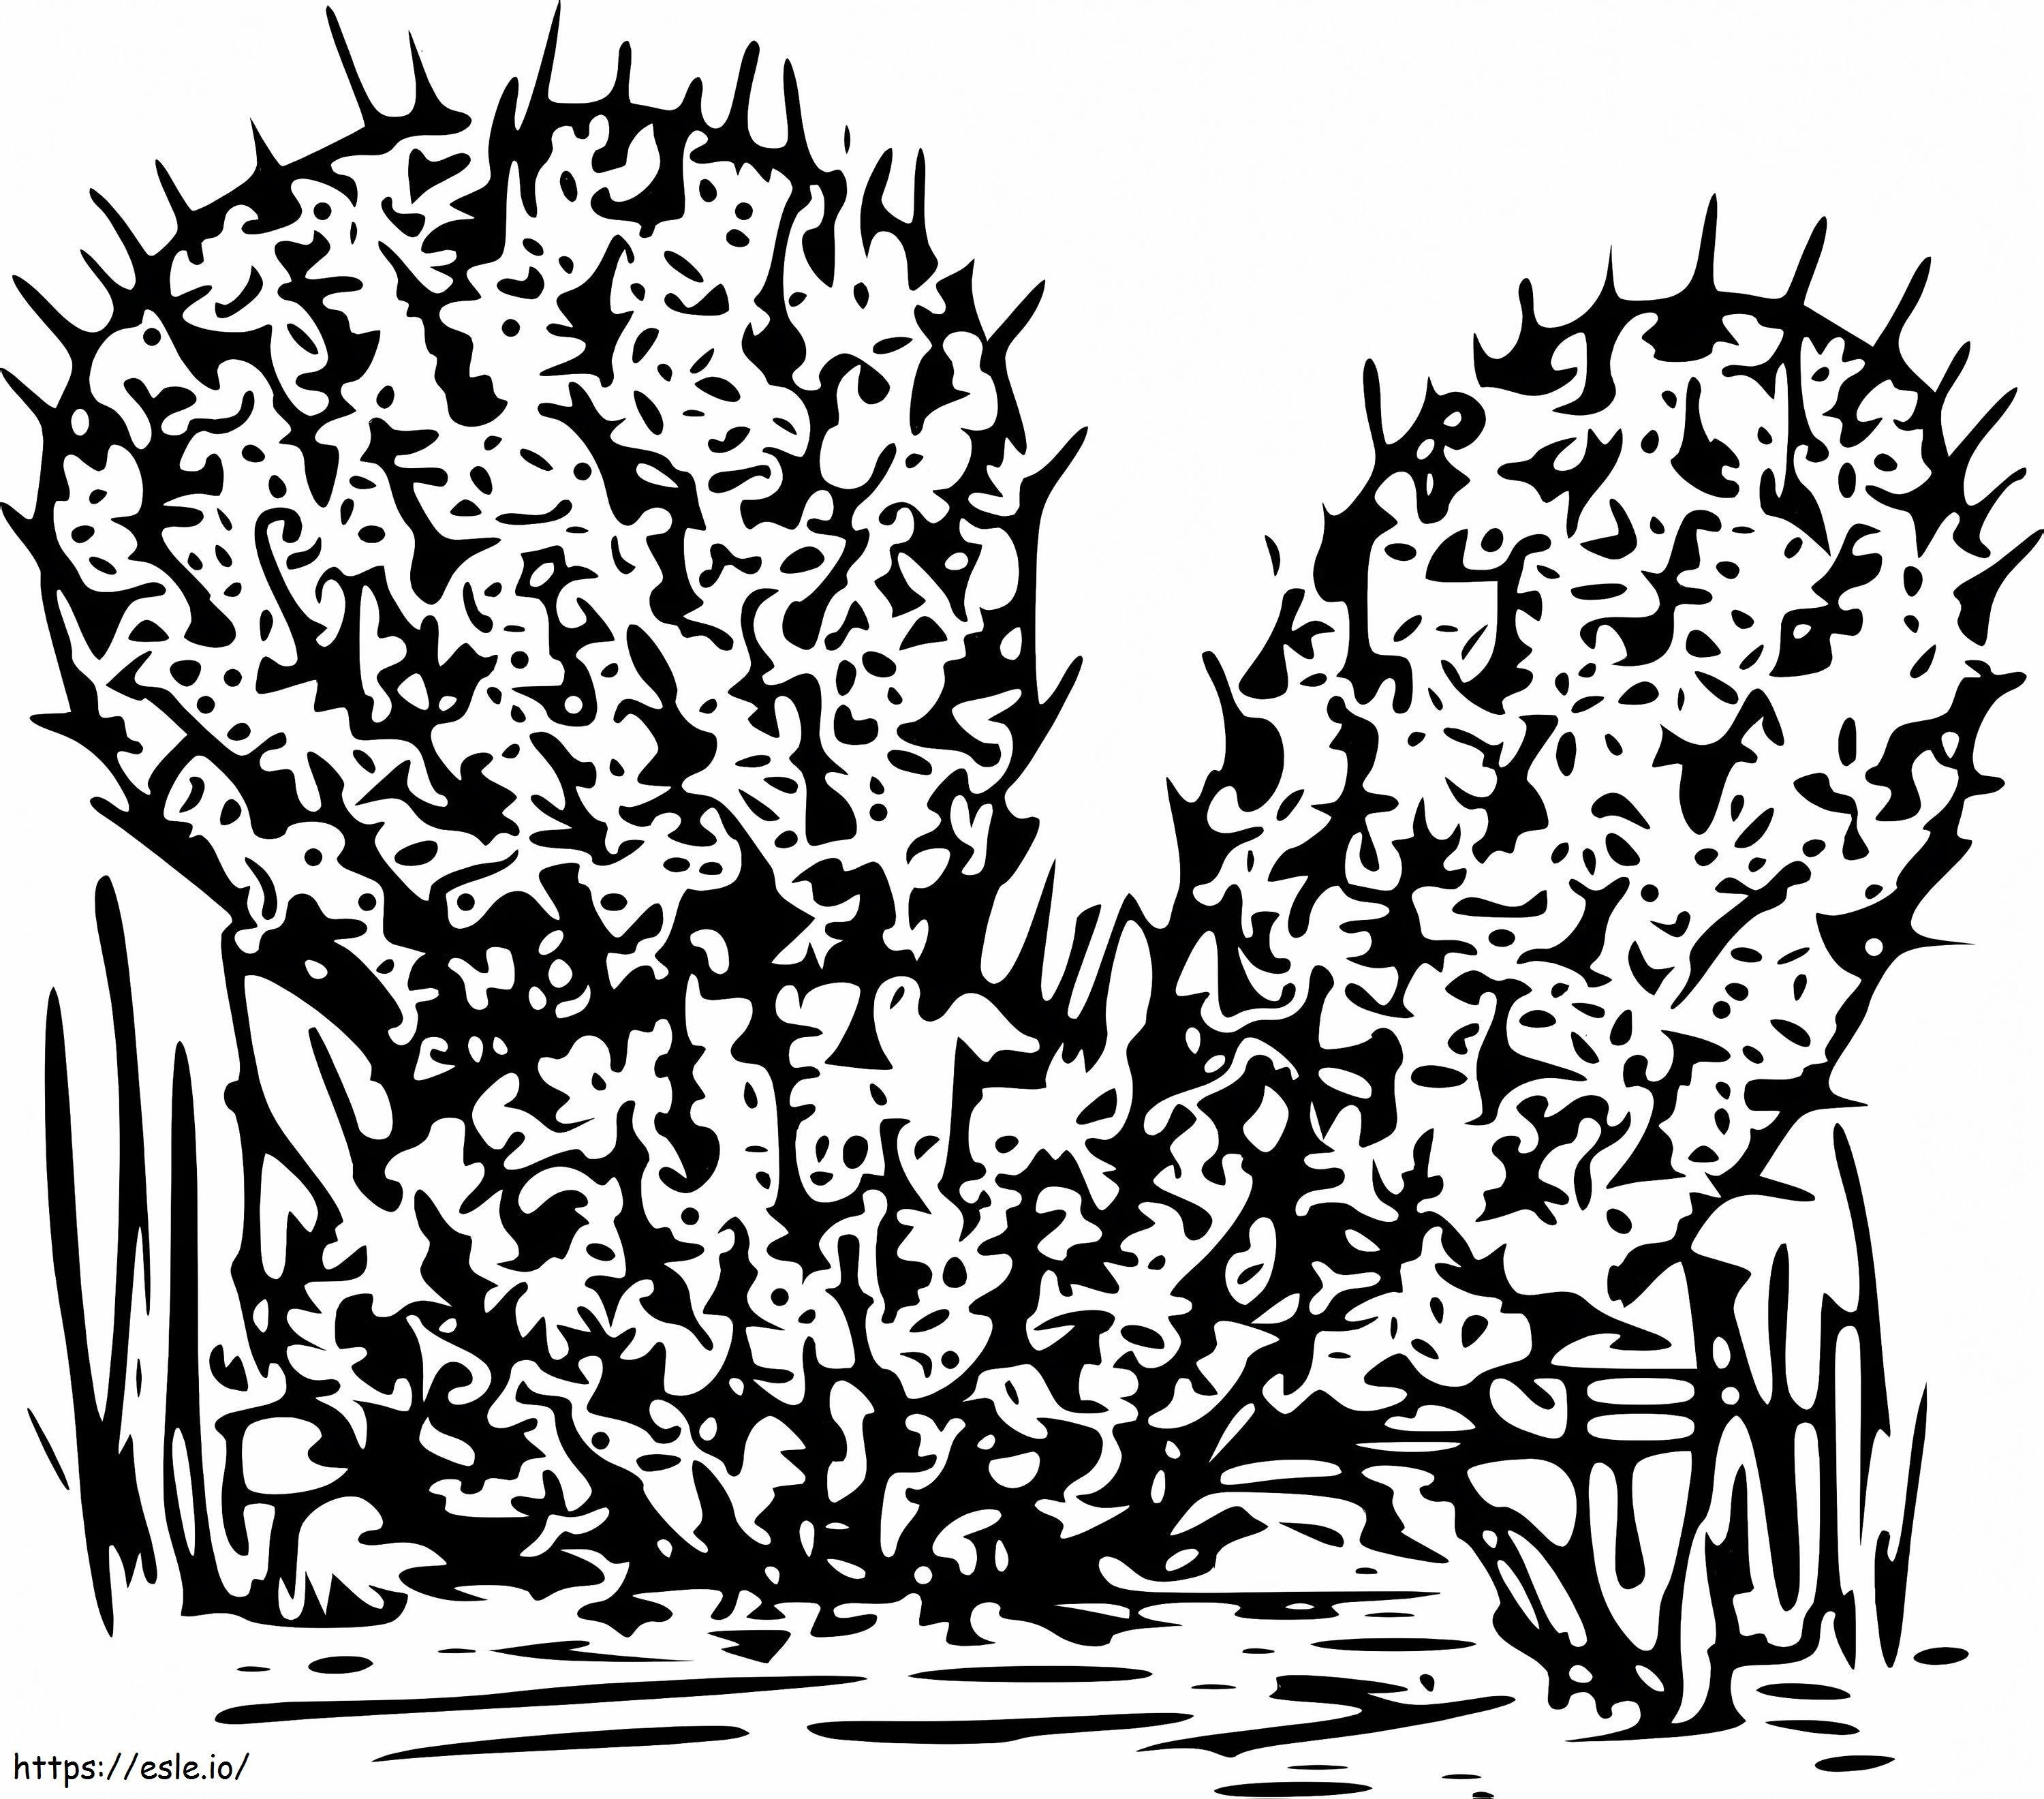 Kaktus 1 kolorowanka